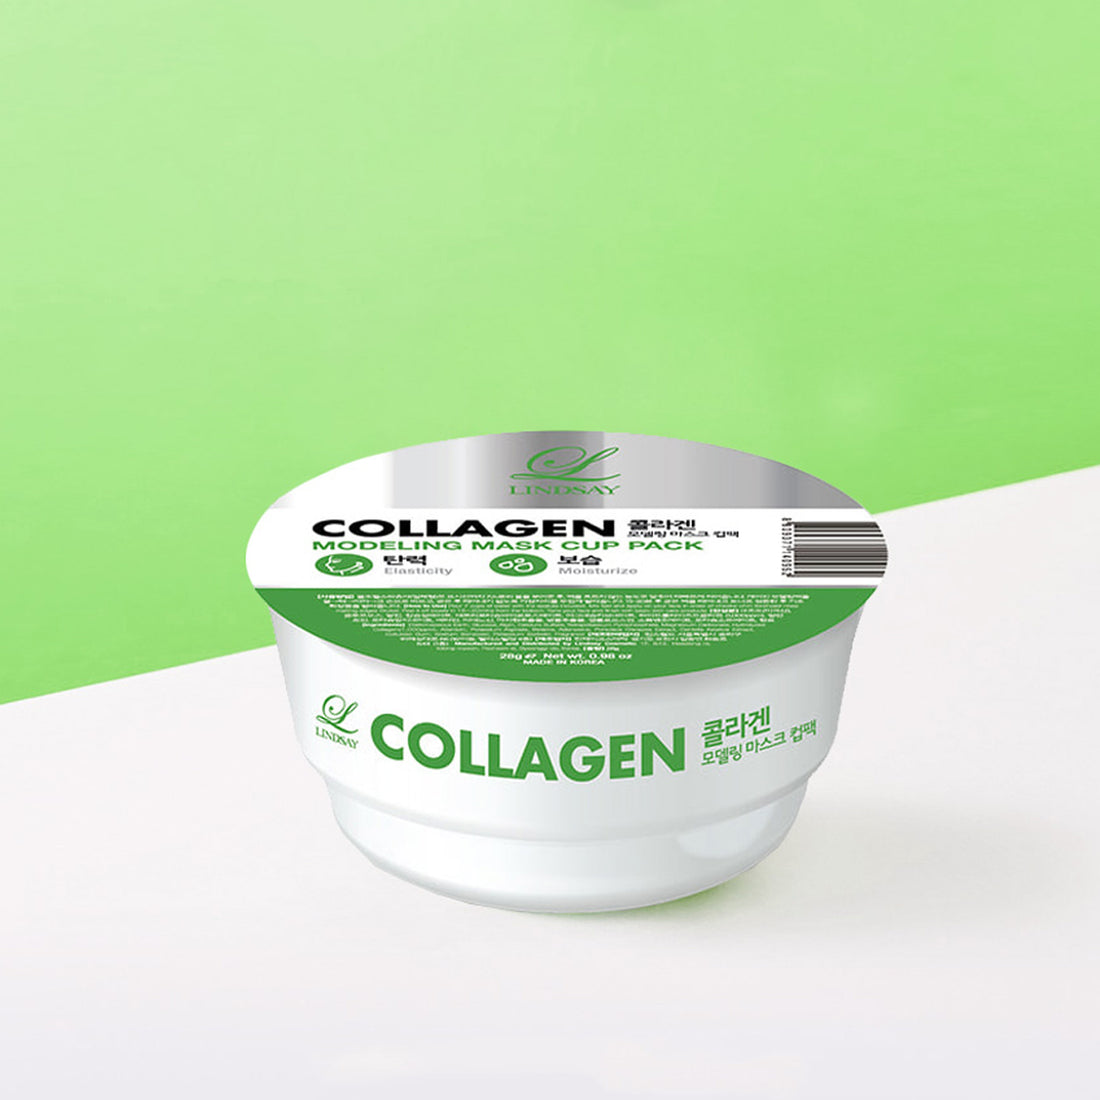 LINDSAY Collagen Modeling Mask Cup Pack 28g